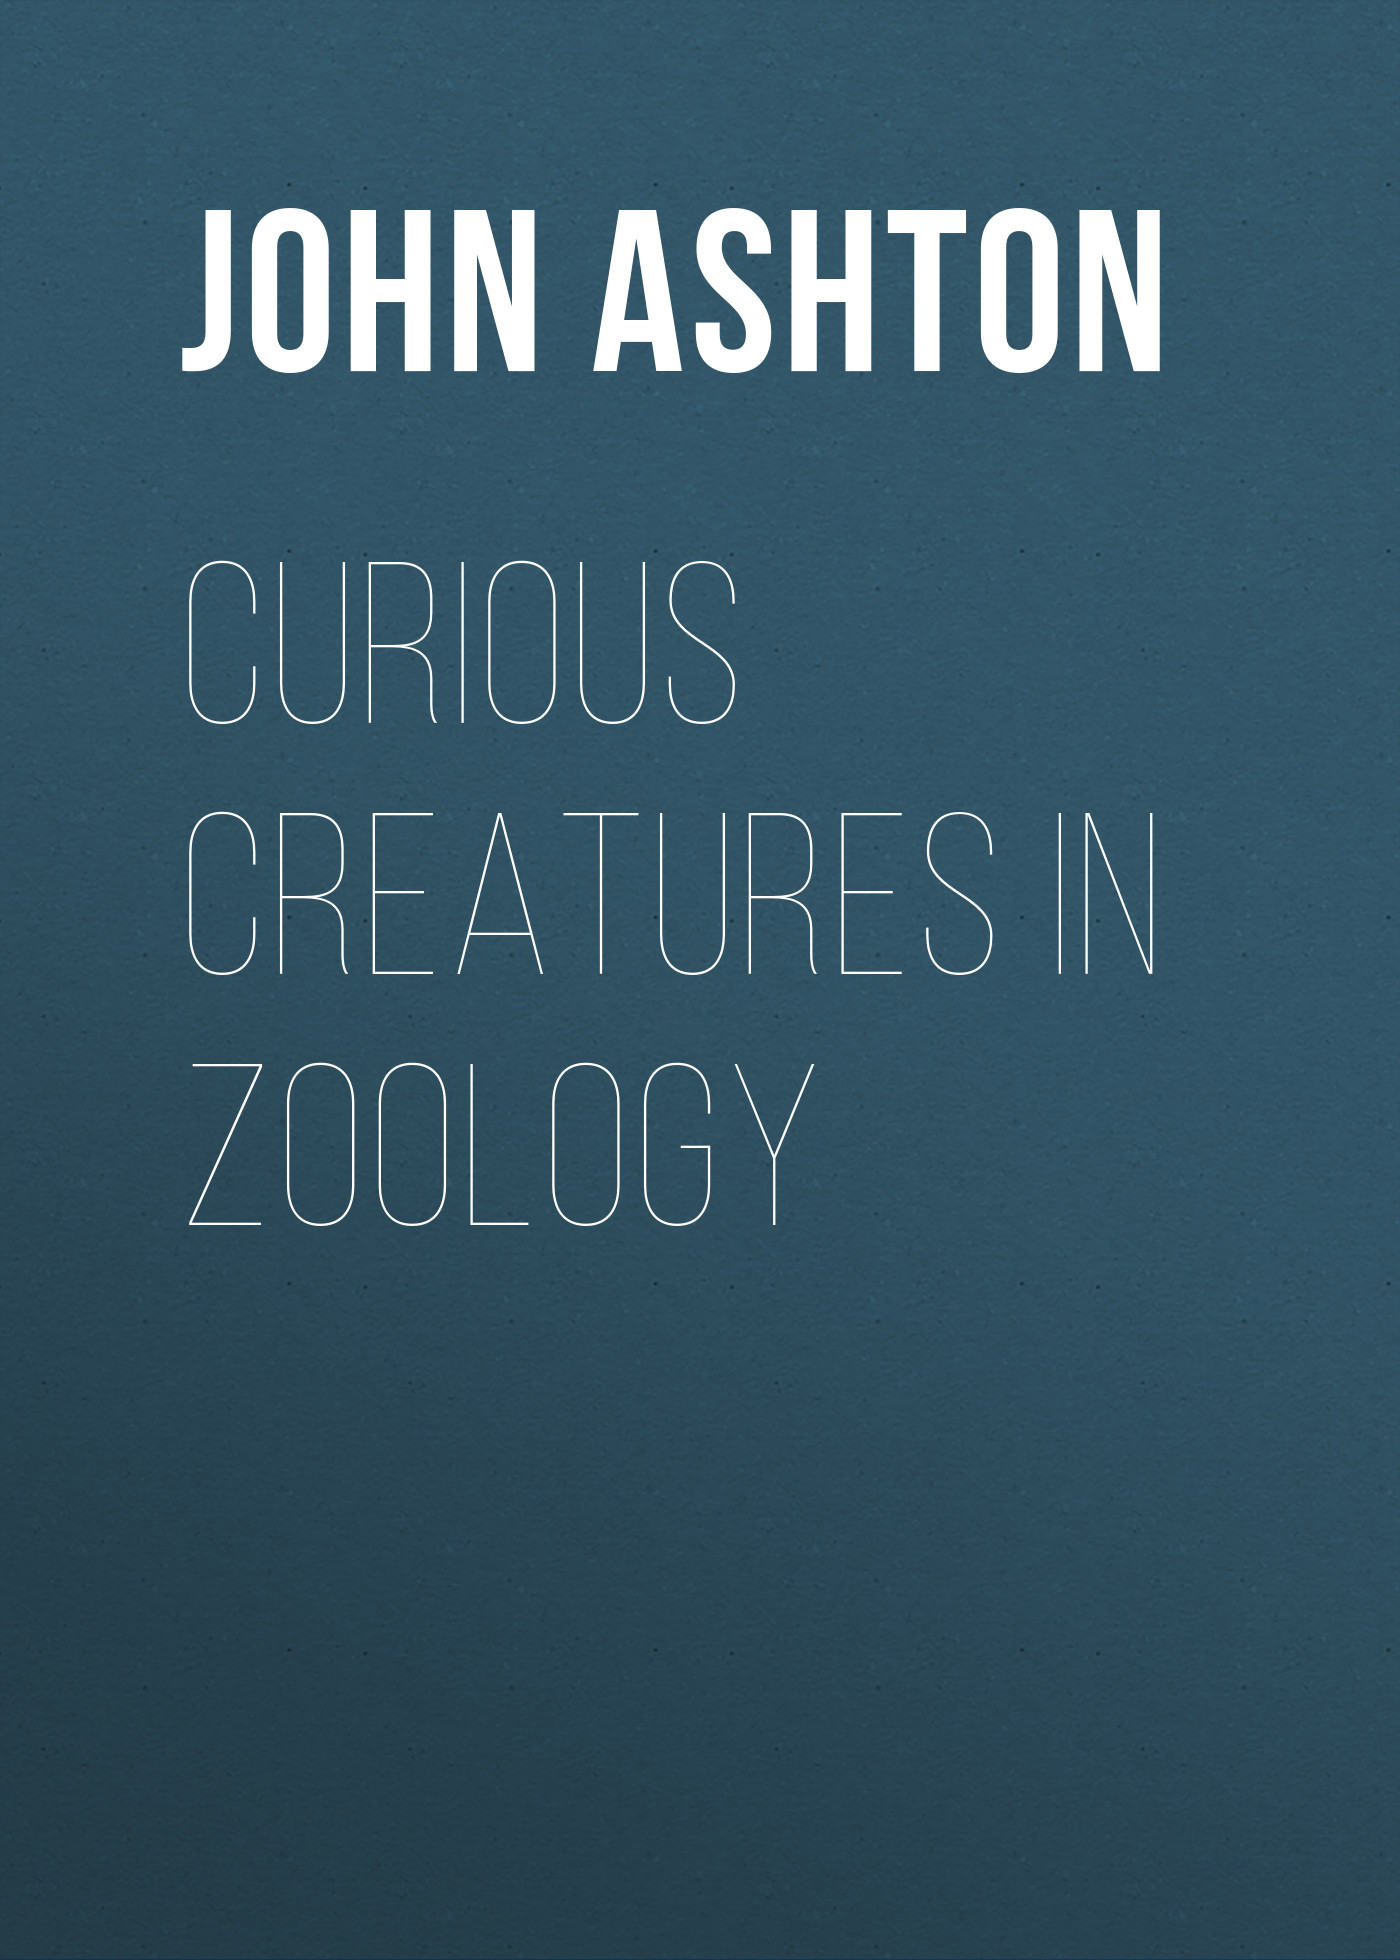 Книга Curious Creatures in Zoology из серии , созданная John Ashton, может относится к жанру Природа и животные, Зарубежная старинная литература, Зарубежная классика. Стоимость электронной книги Curious Creatures in Zoology с идентификатором 24171100 составляет 0 руб.